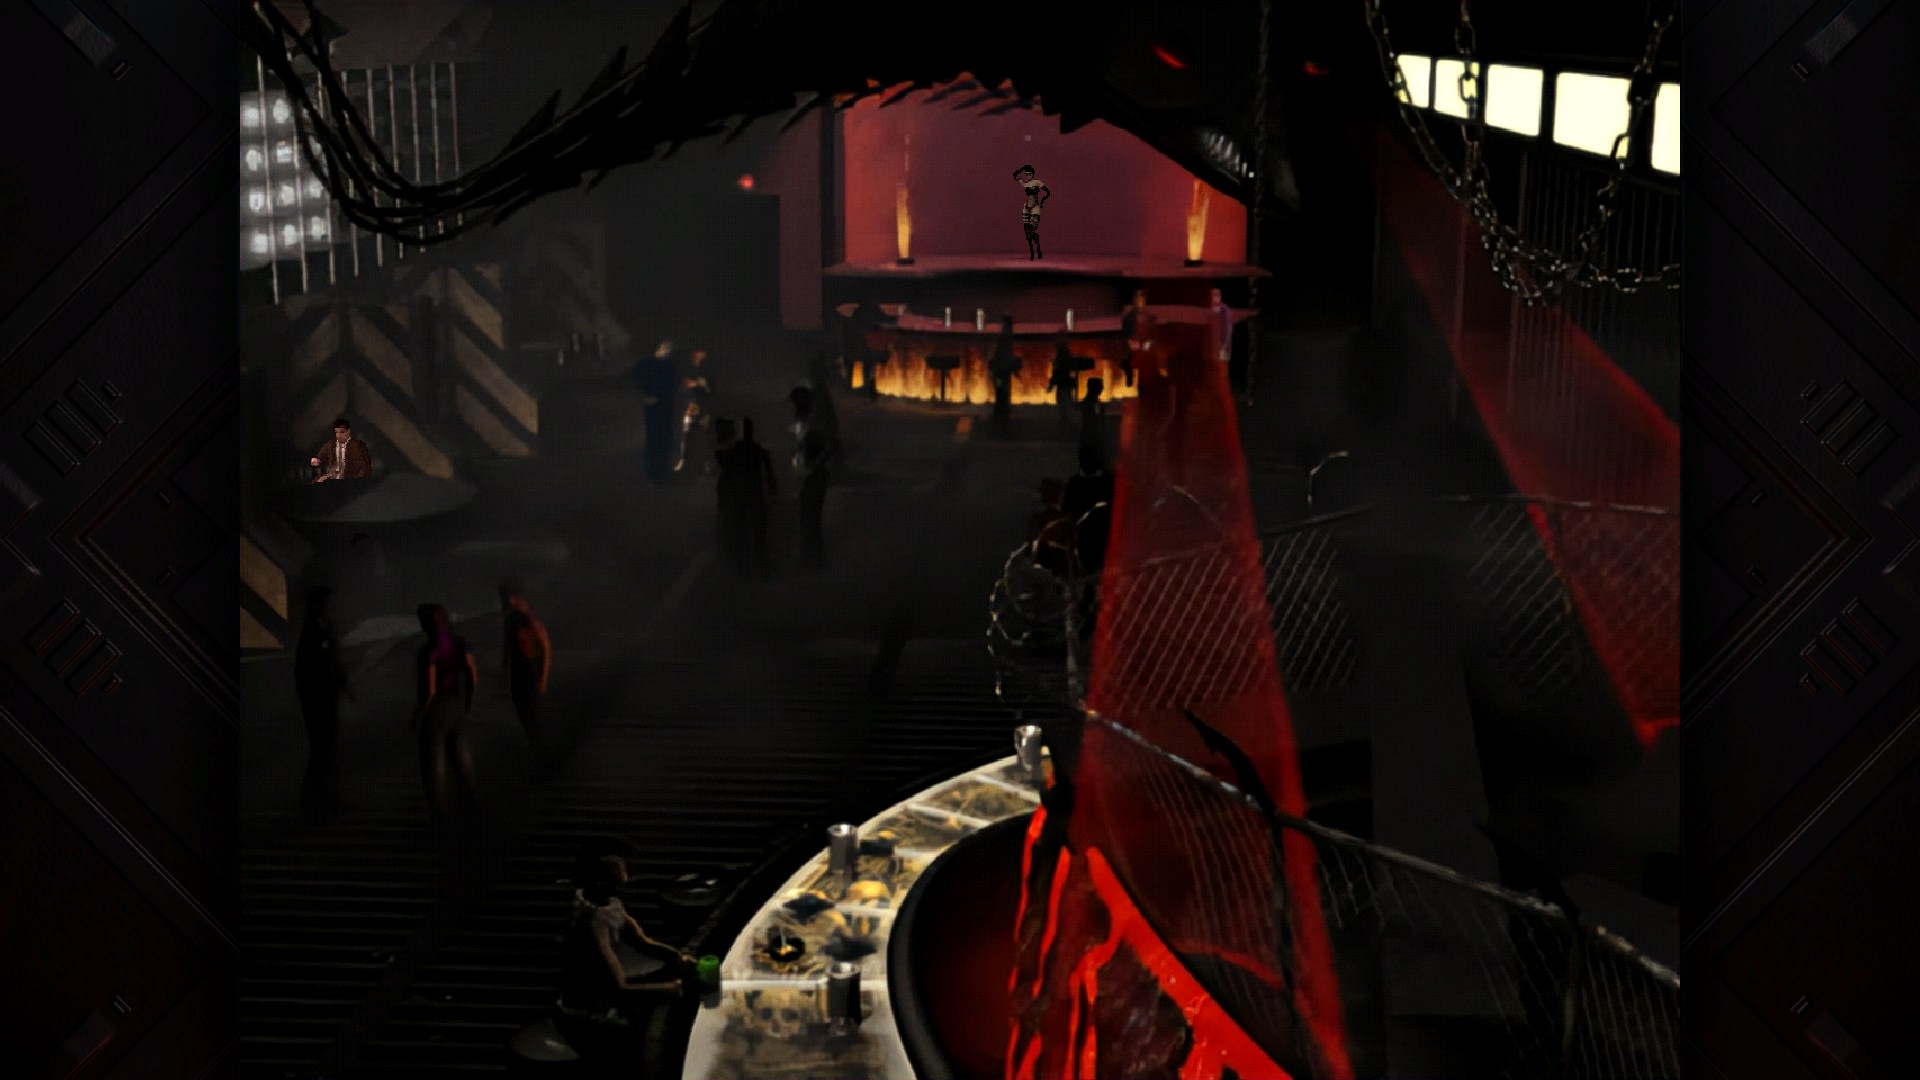 Blade Runner: Enhanced Edition screenshot 46043